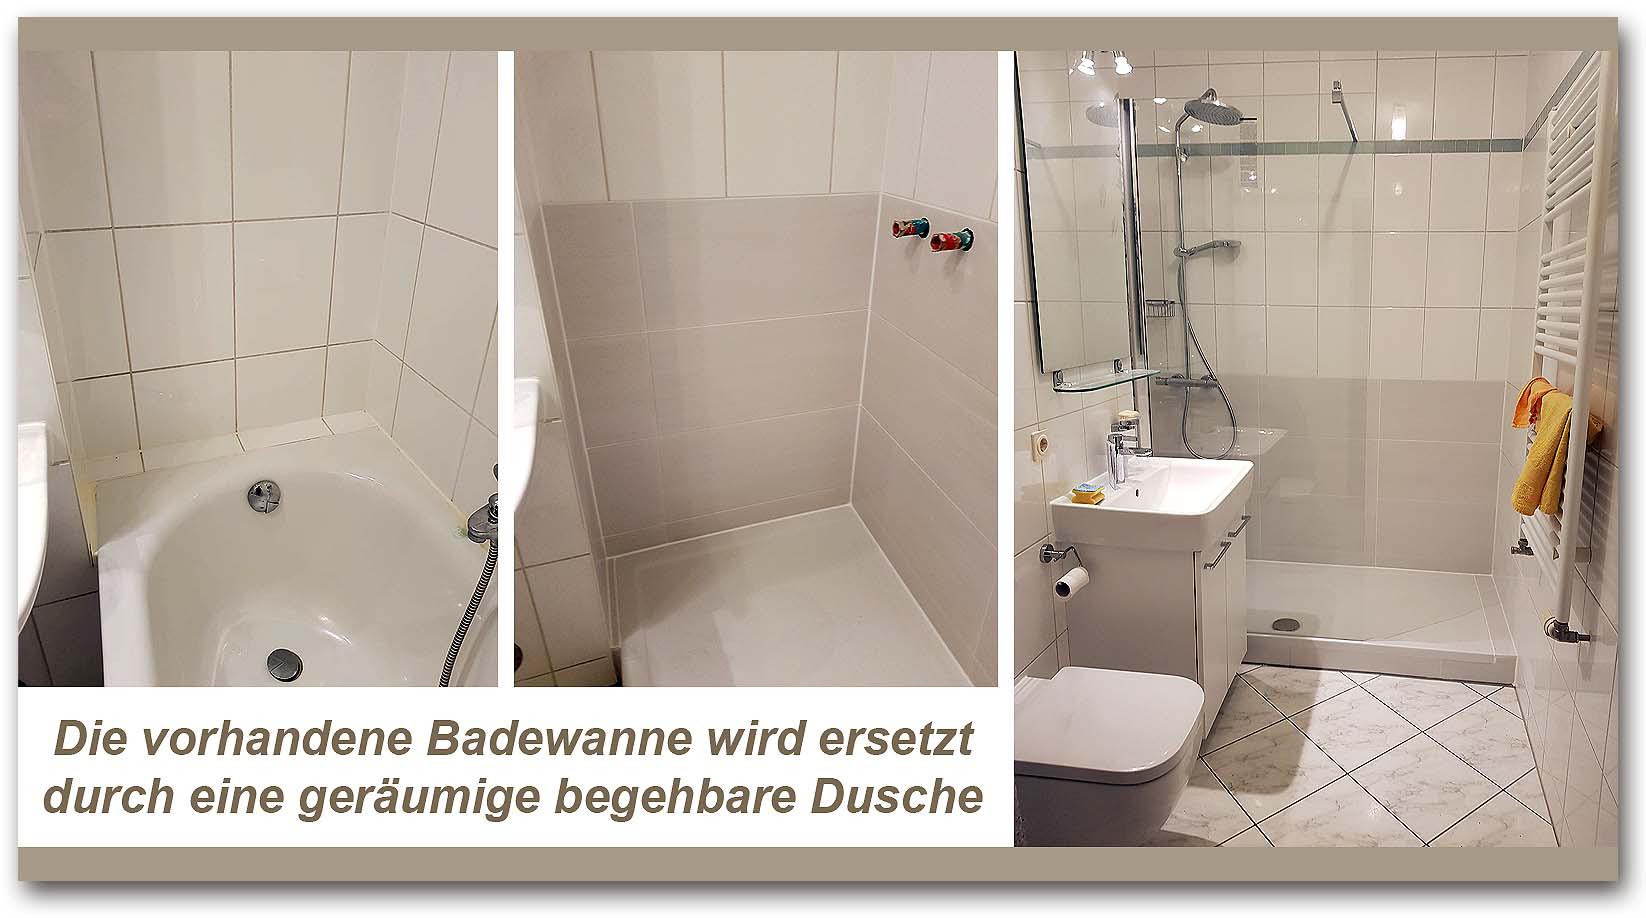 Kundenfoto 88 Bavaria Bäder Technik GbR | Badsanierung u. Badrenovierung | München